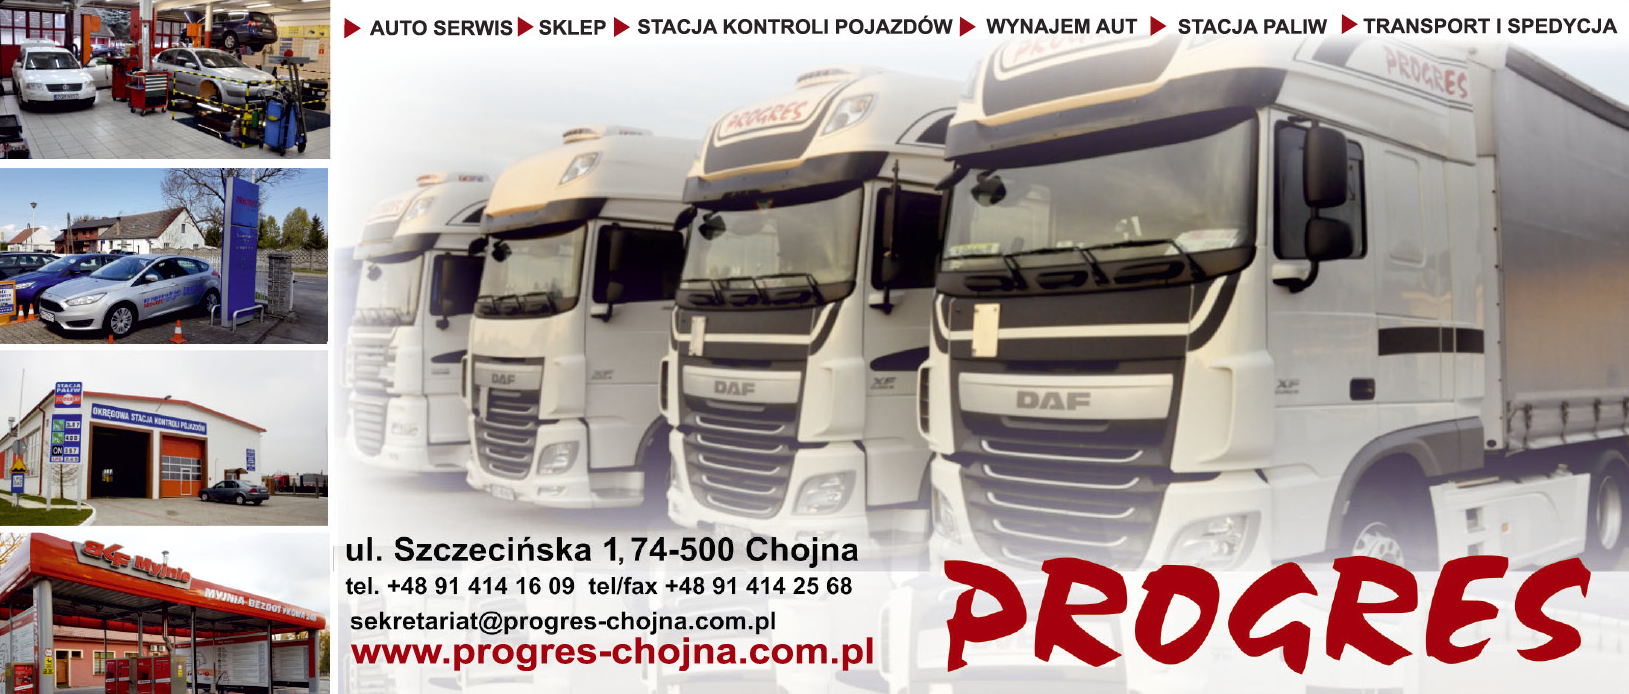 P.U.H. "PROGRES" Sp. z o.o. Chojna Transport / Spedycja / Stacja Paliw / Auto Serwis / Wynajem Aut